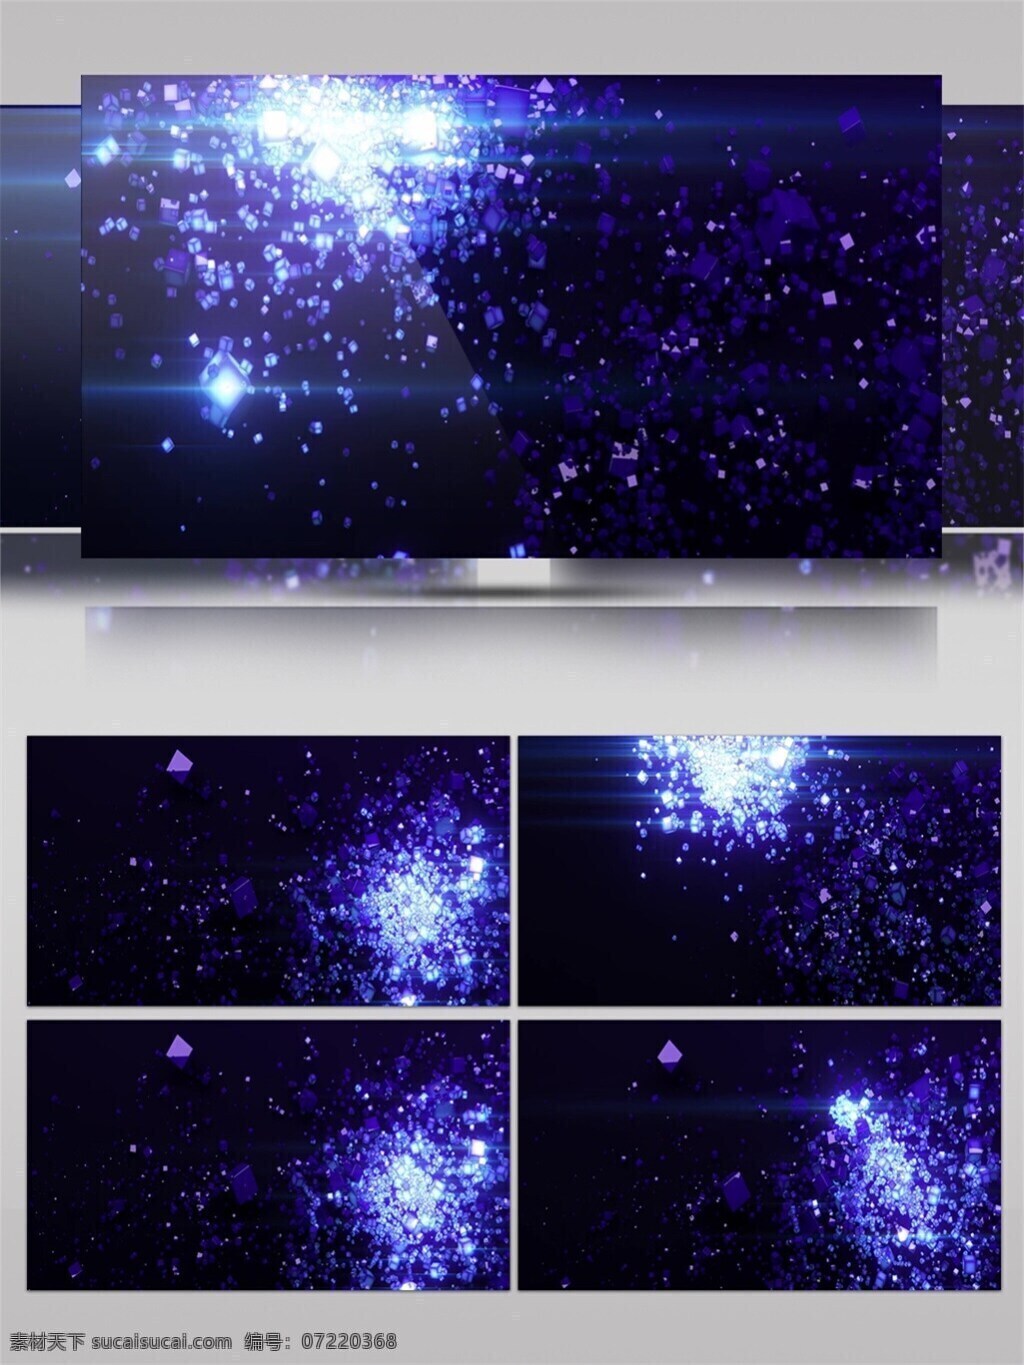 蓝色 星空 银河 视频 光束 节目灯光 视觉享受 唯美背景素材 宇宙